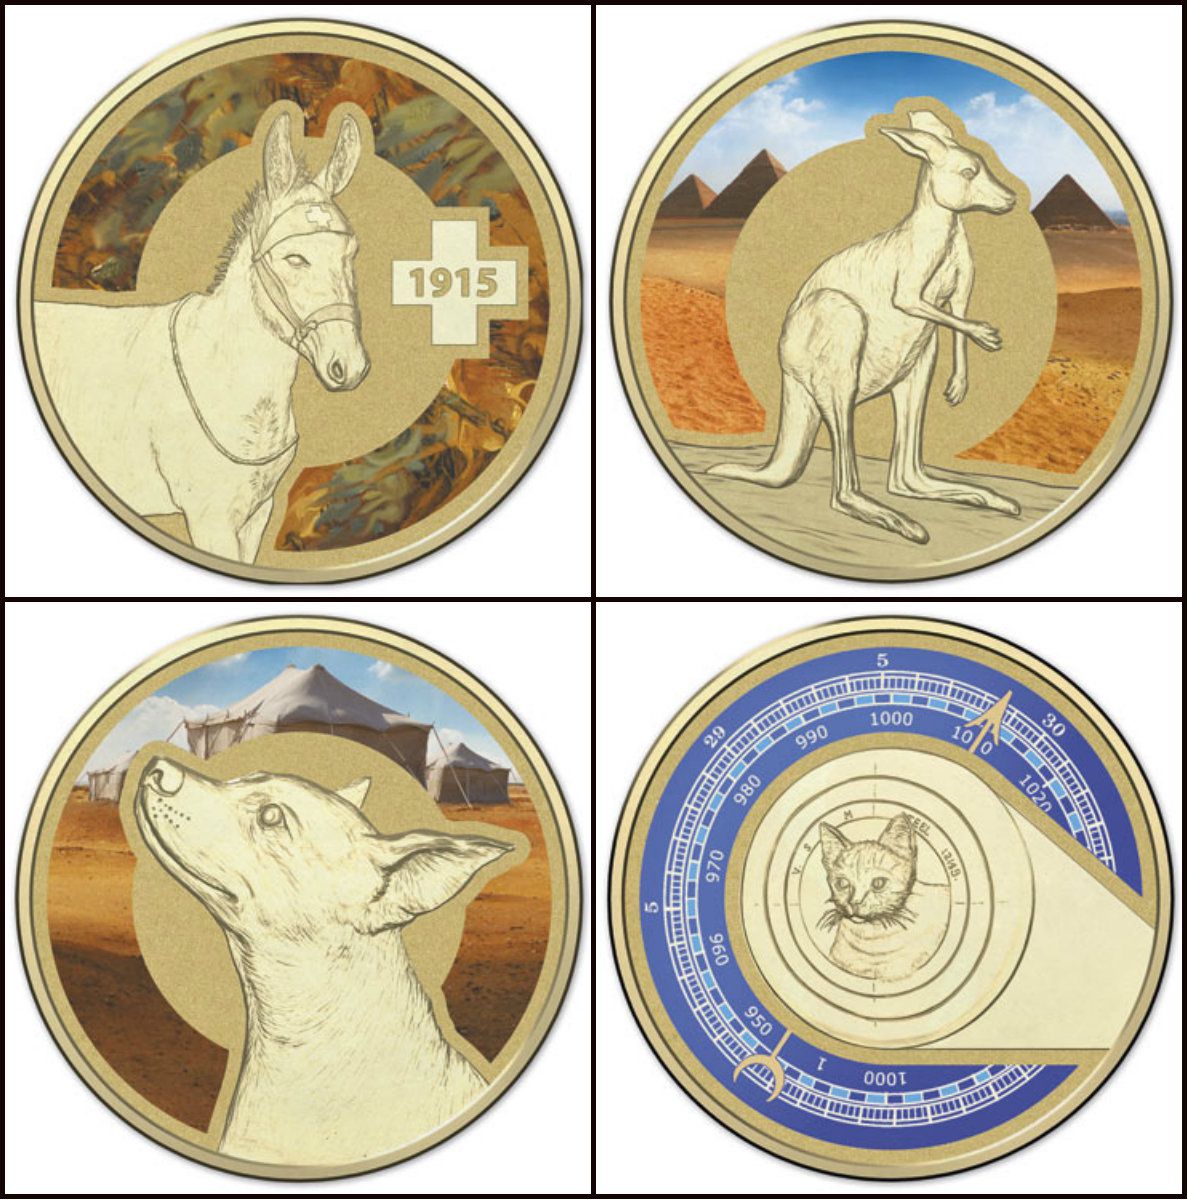 Другие монеты о животных-героях Австралии